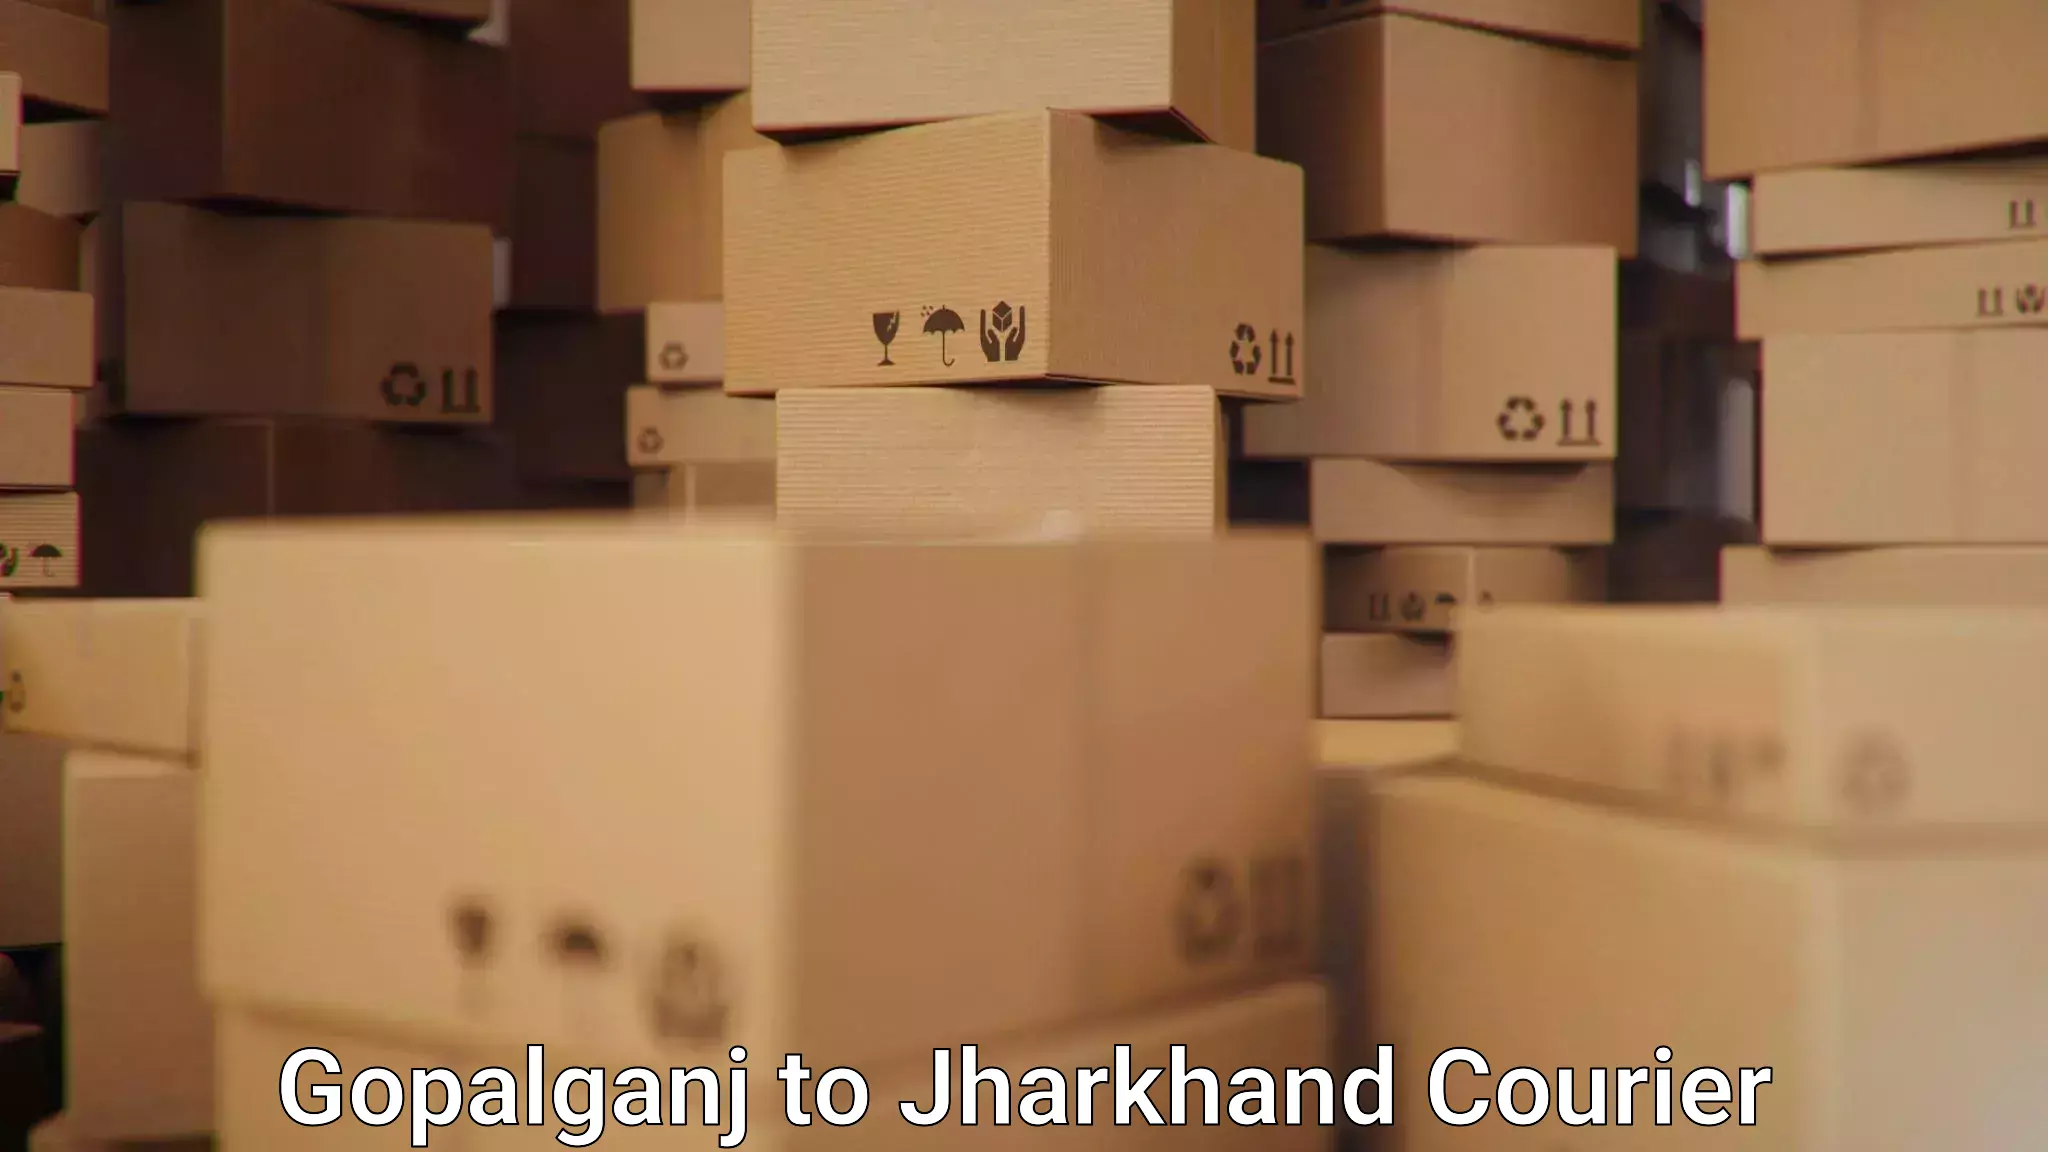 Shipping and handling Gopalganj to Medininagar